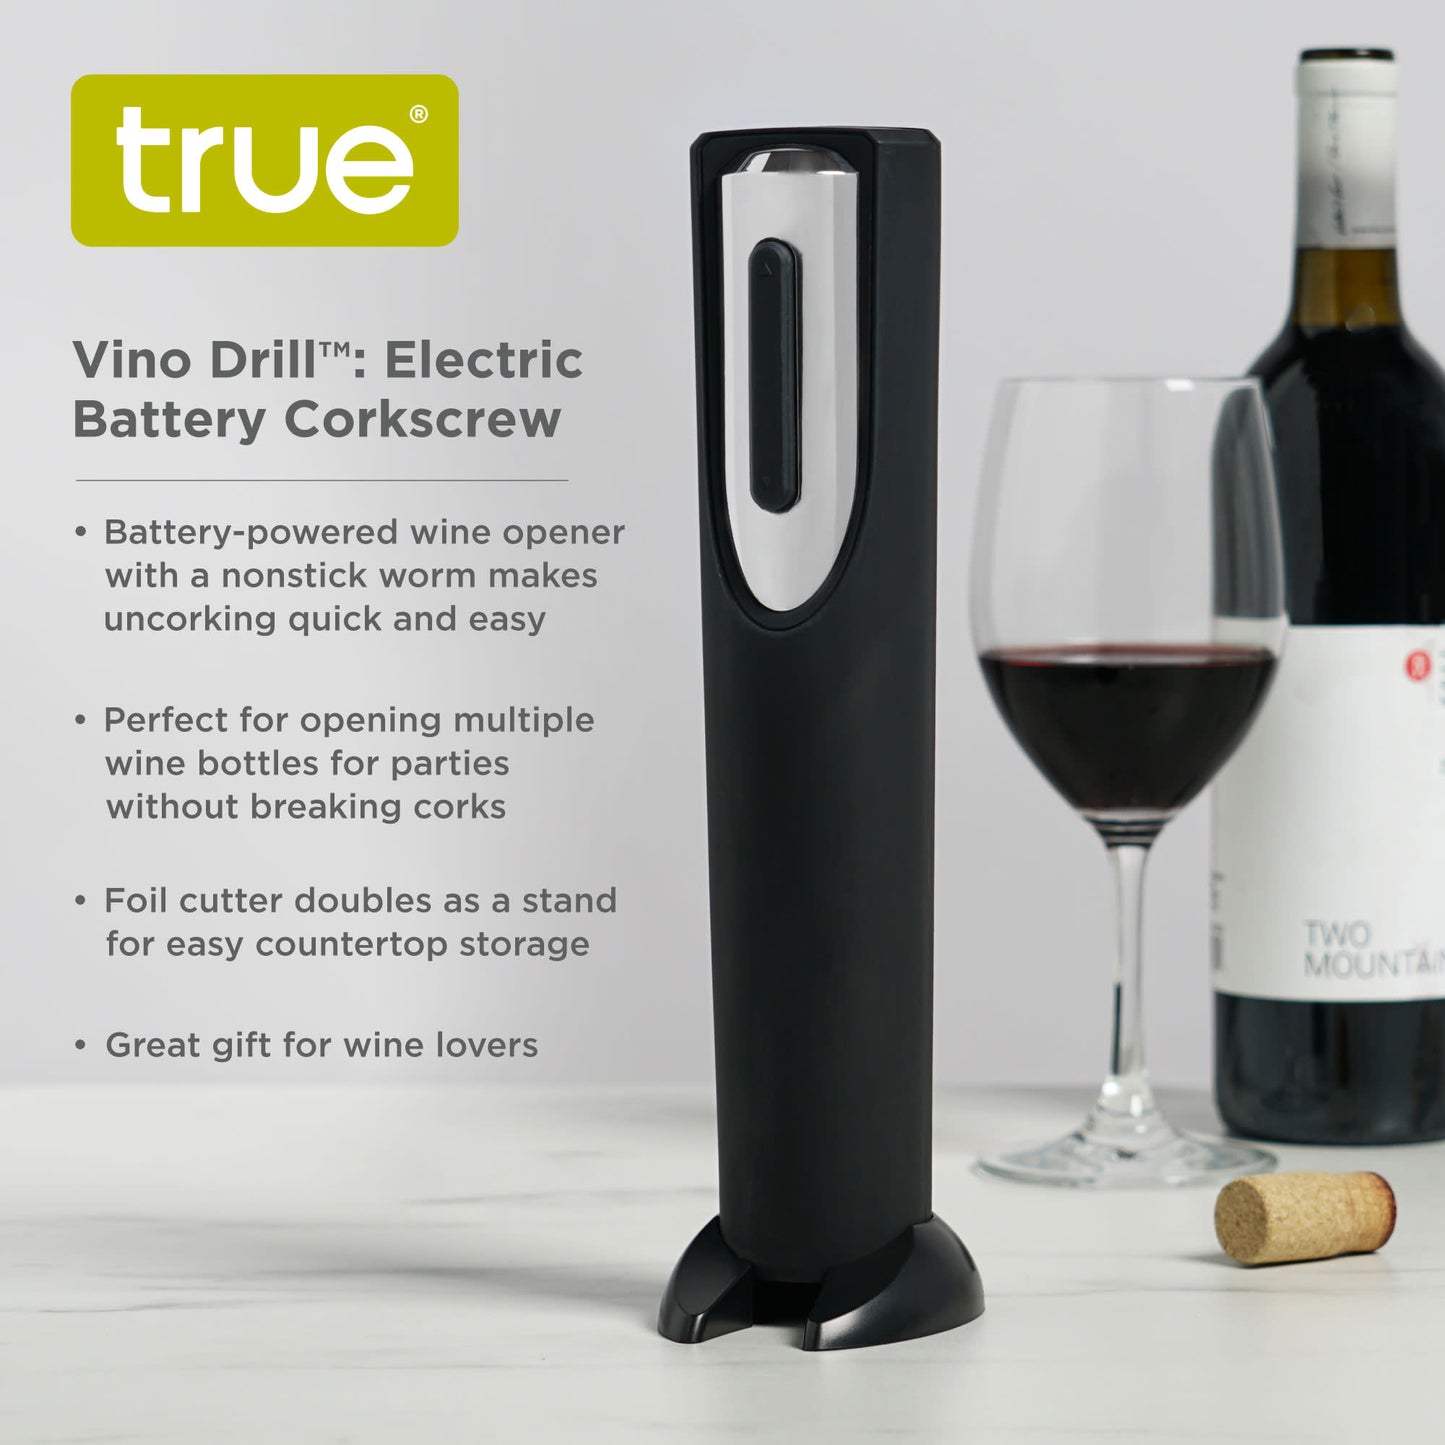 Vino Drill™: Electric Battery Corkscrew